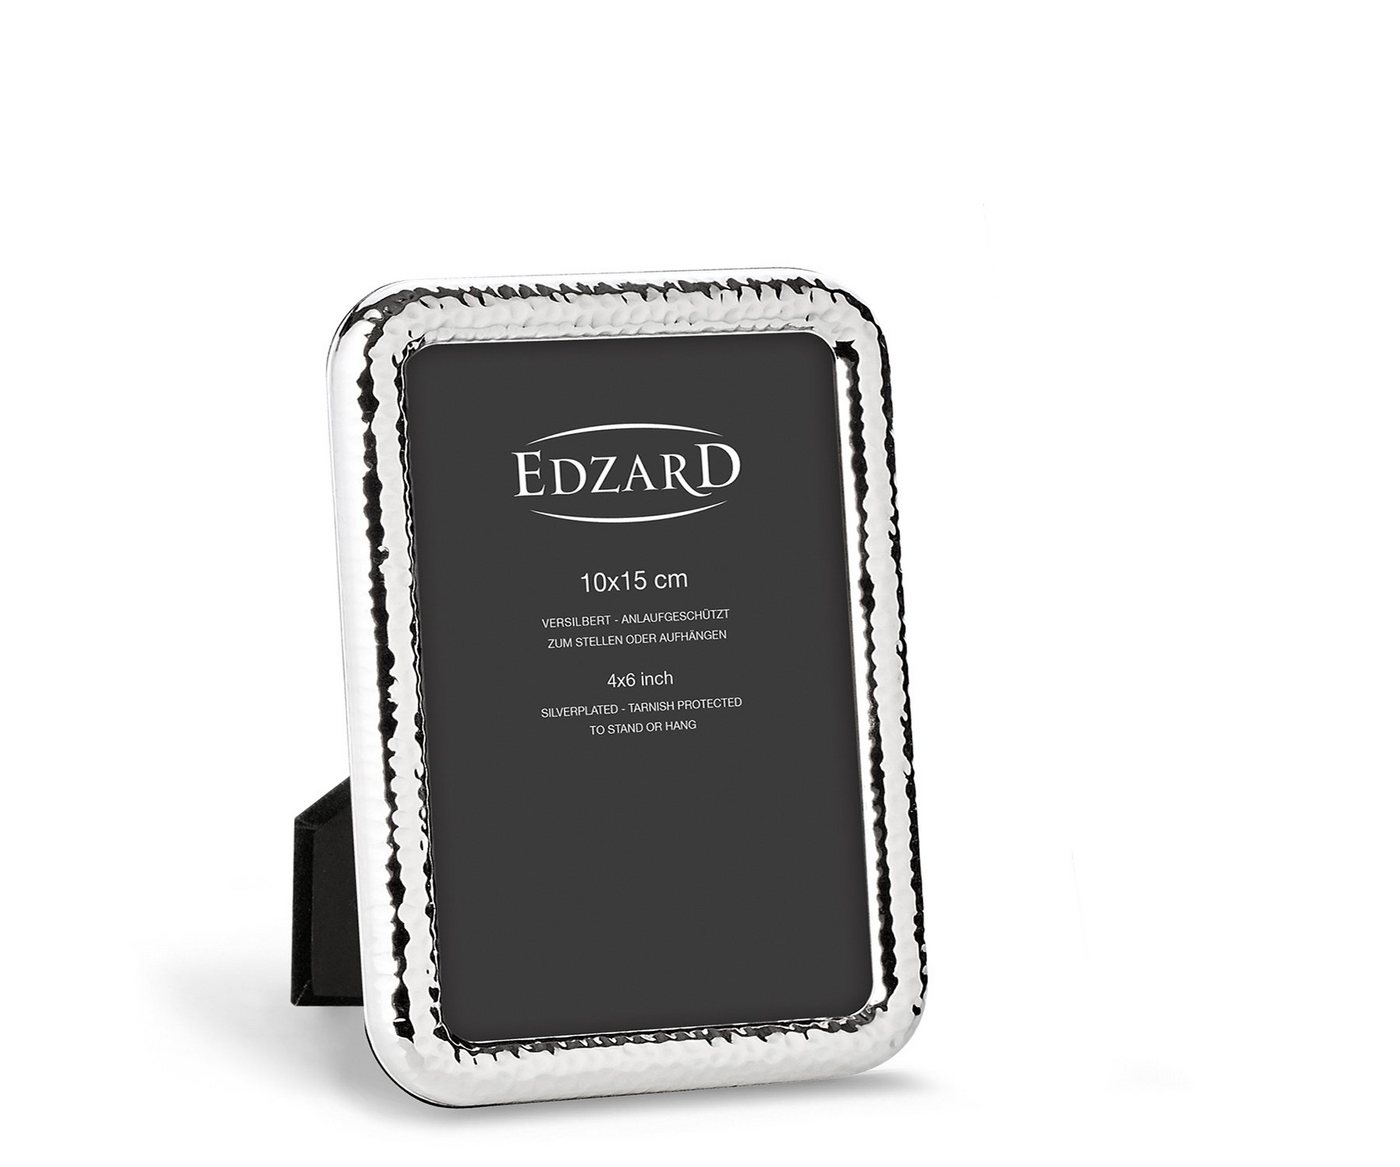 EDZARD Bilderrahmen Amalfi, versilbert und anlaufgeschützt, für 10x15 cm Bilder - Fotorahmen von EDZARD